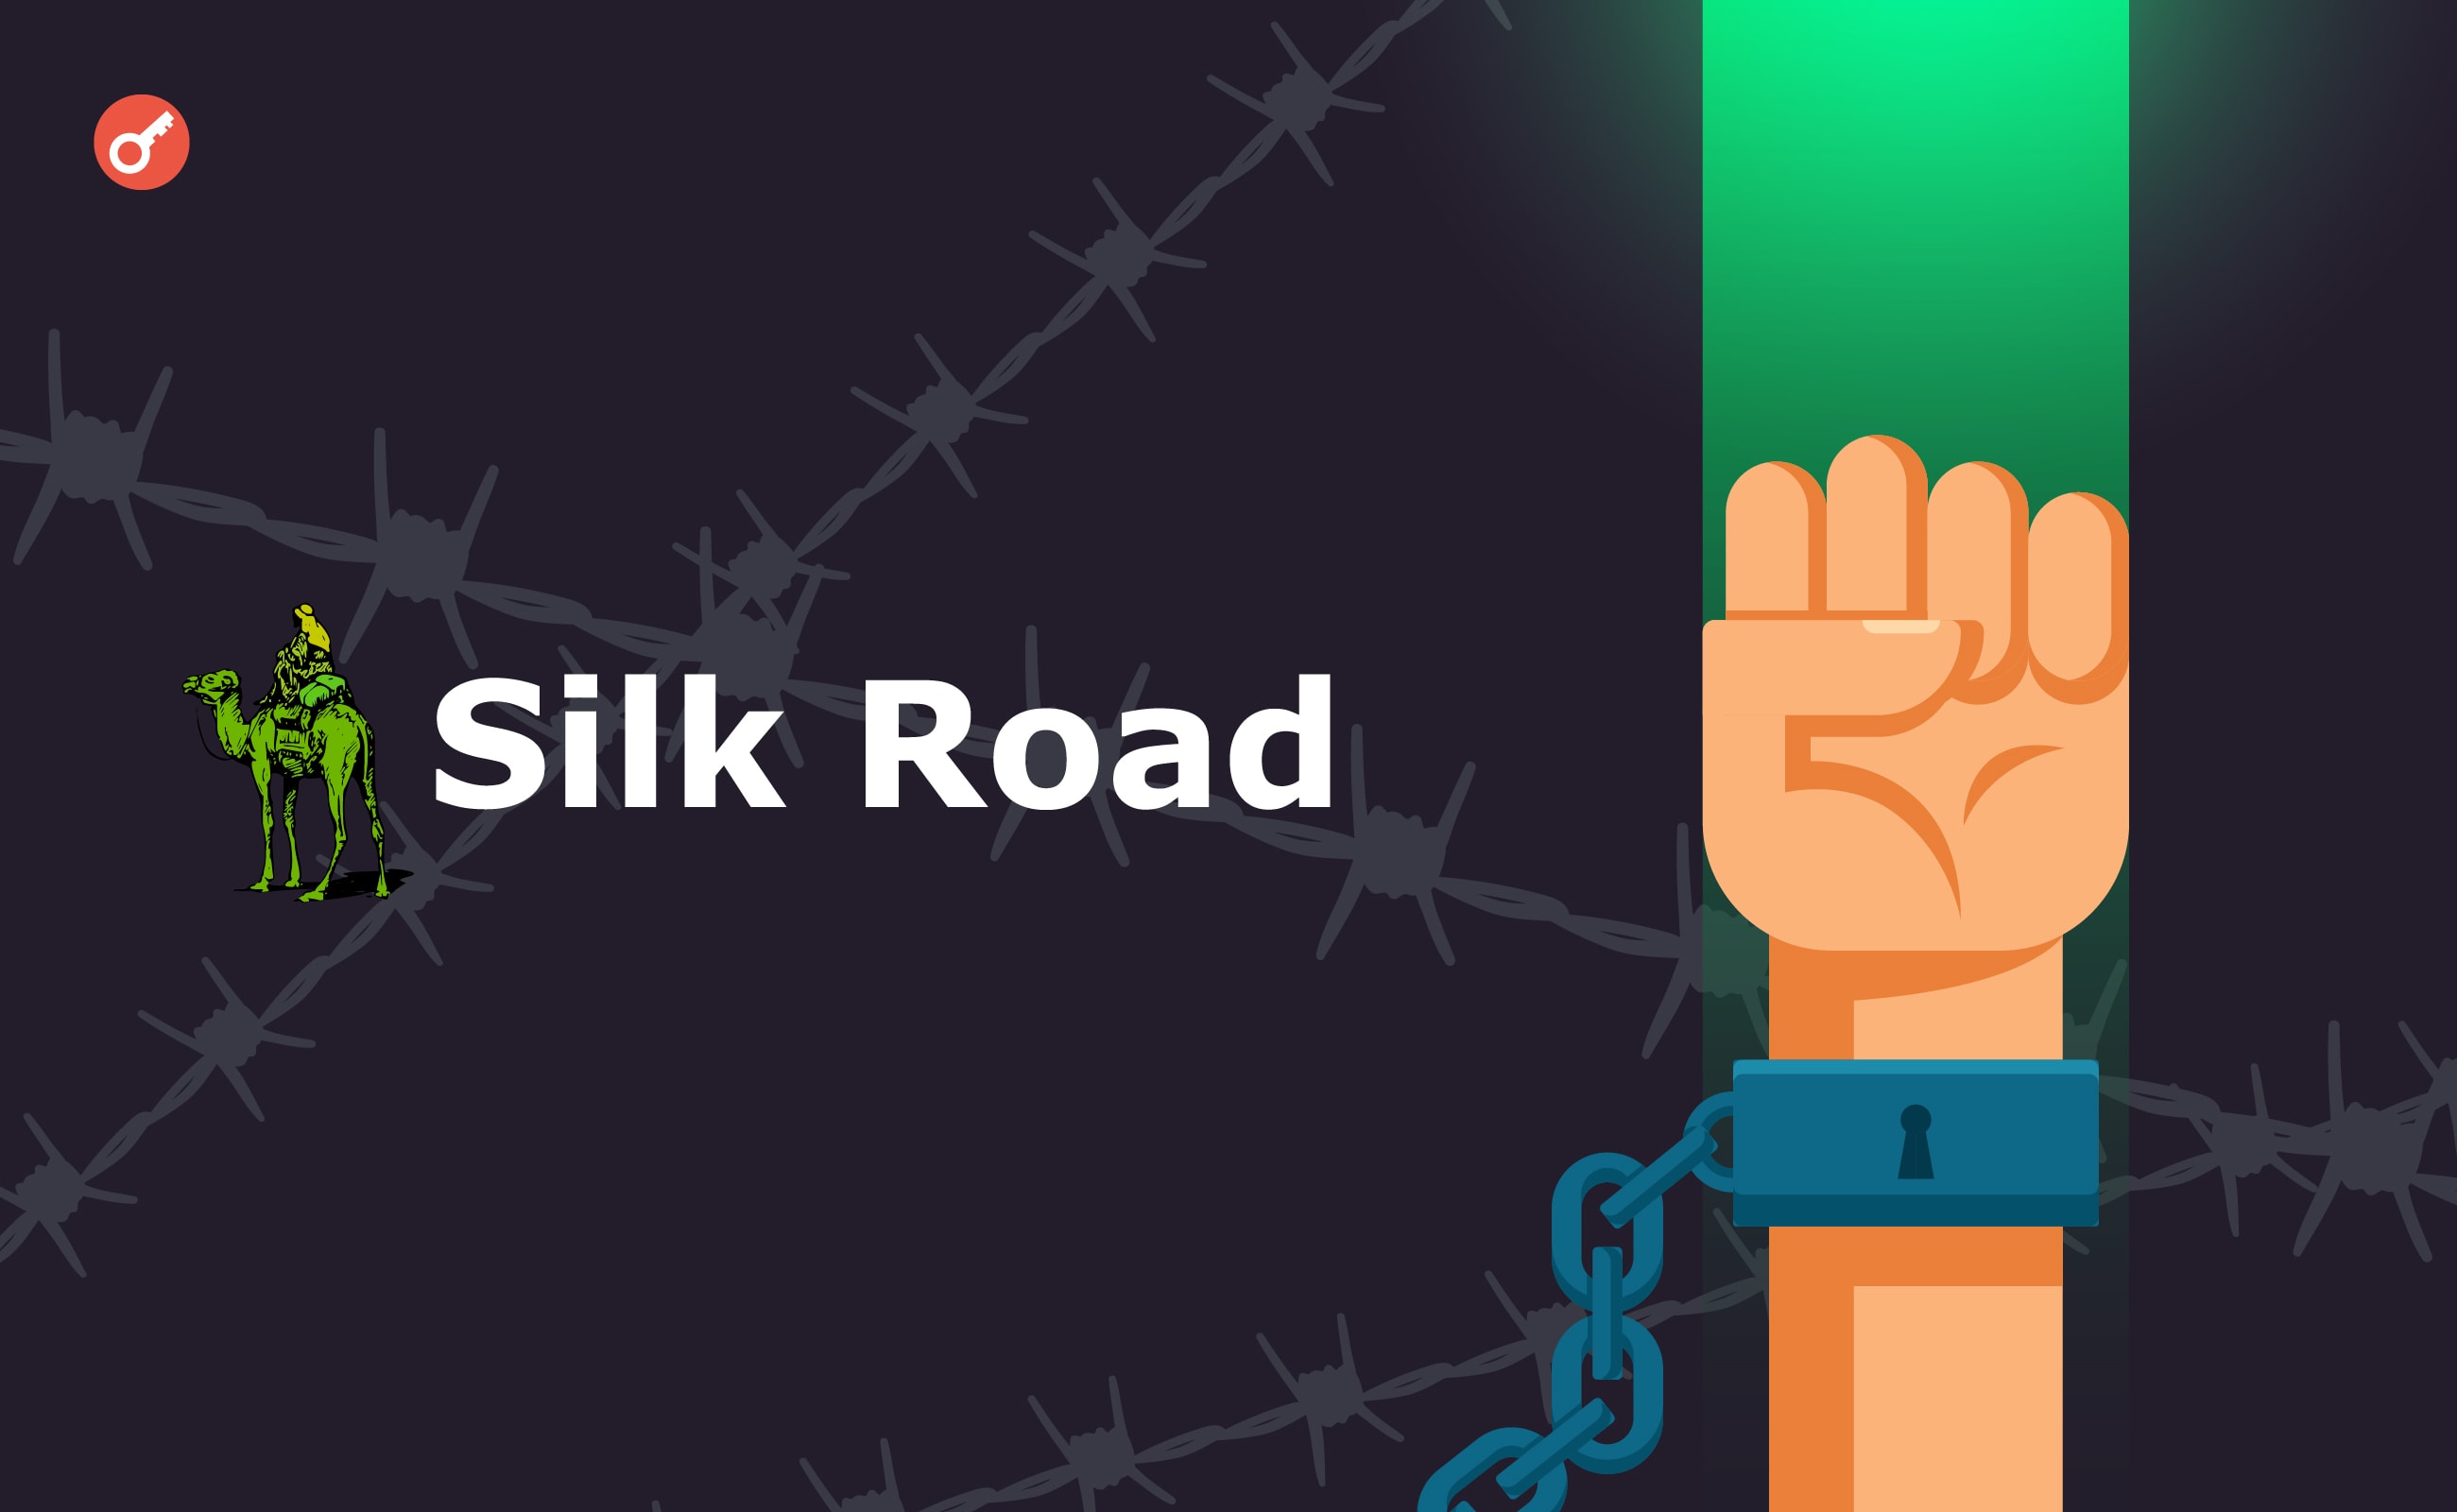 США продадут изъятый по делу Silk Road биткоин на $117 млн. Заглавный коллаж новости.